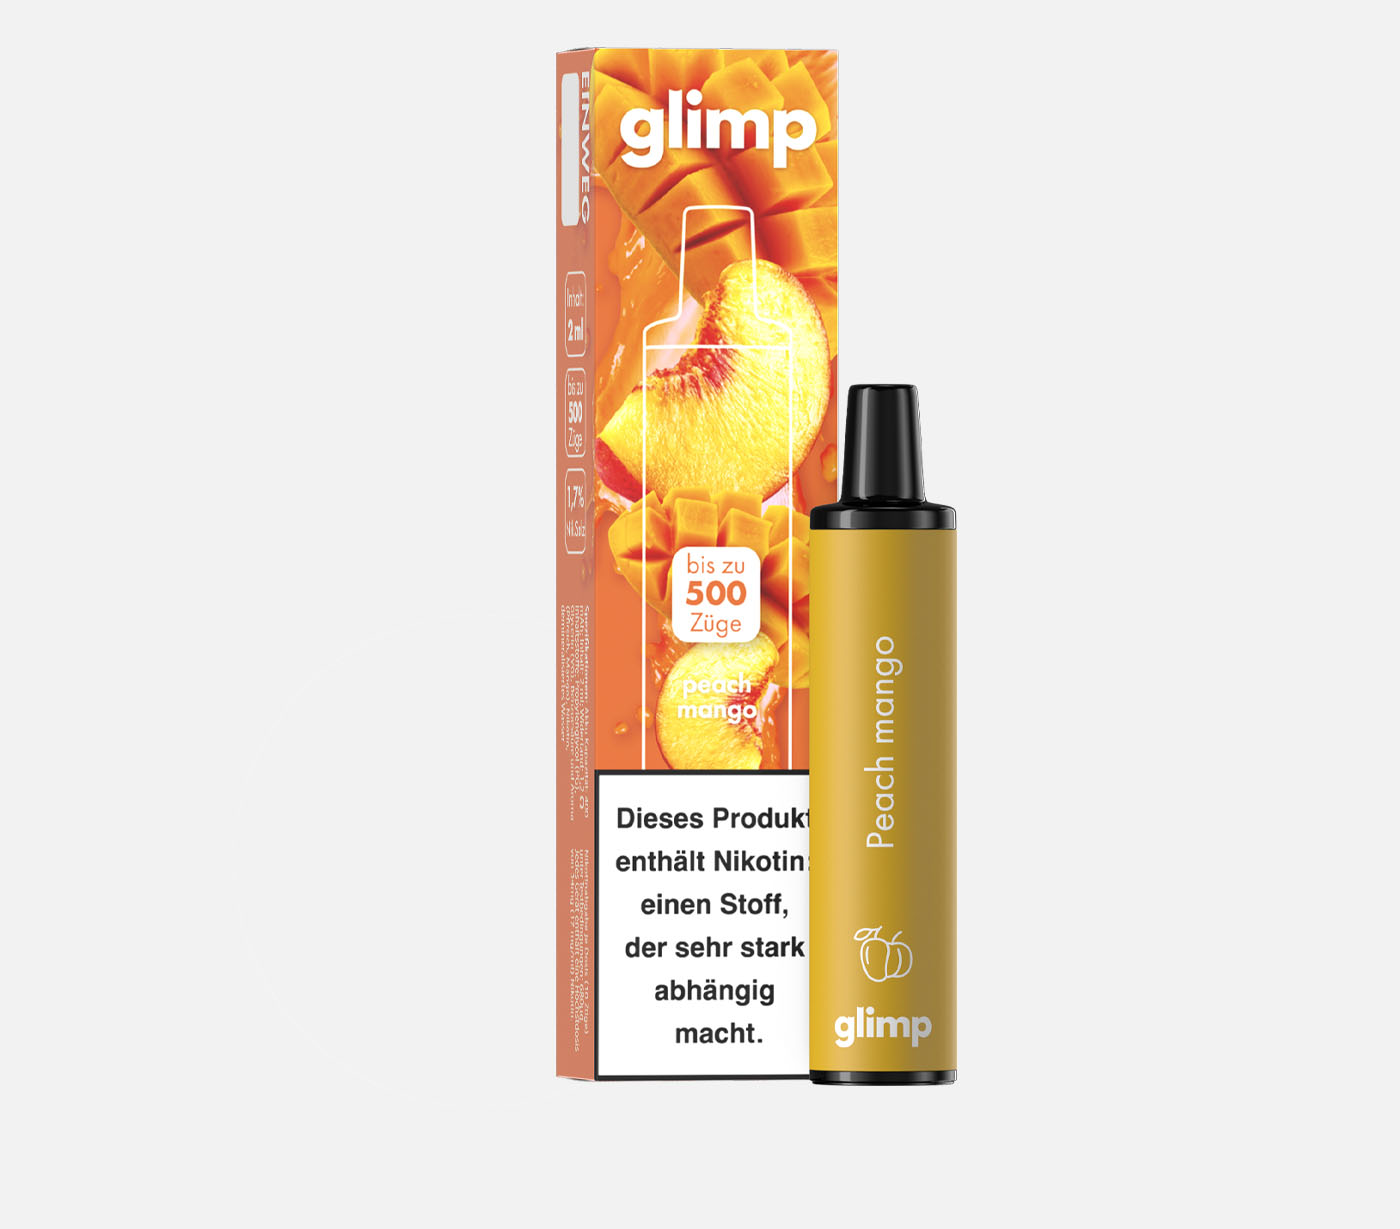 GLIMP Peach Mango Einweg E-Zigarette